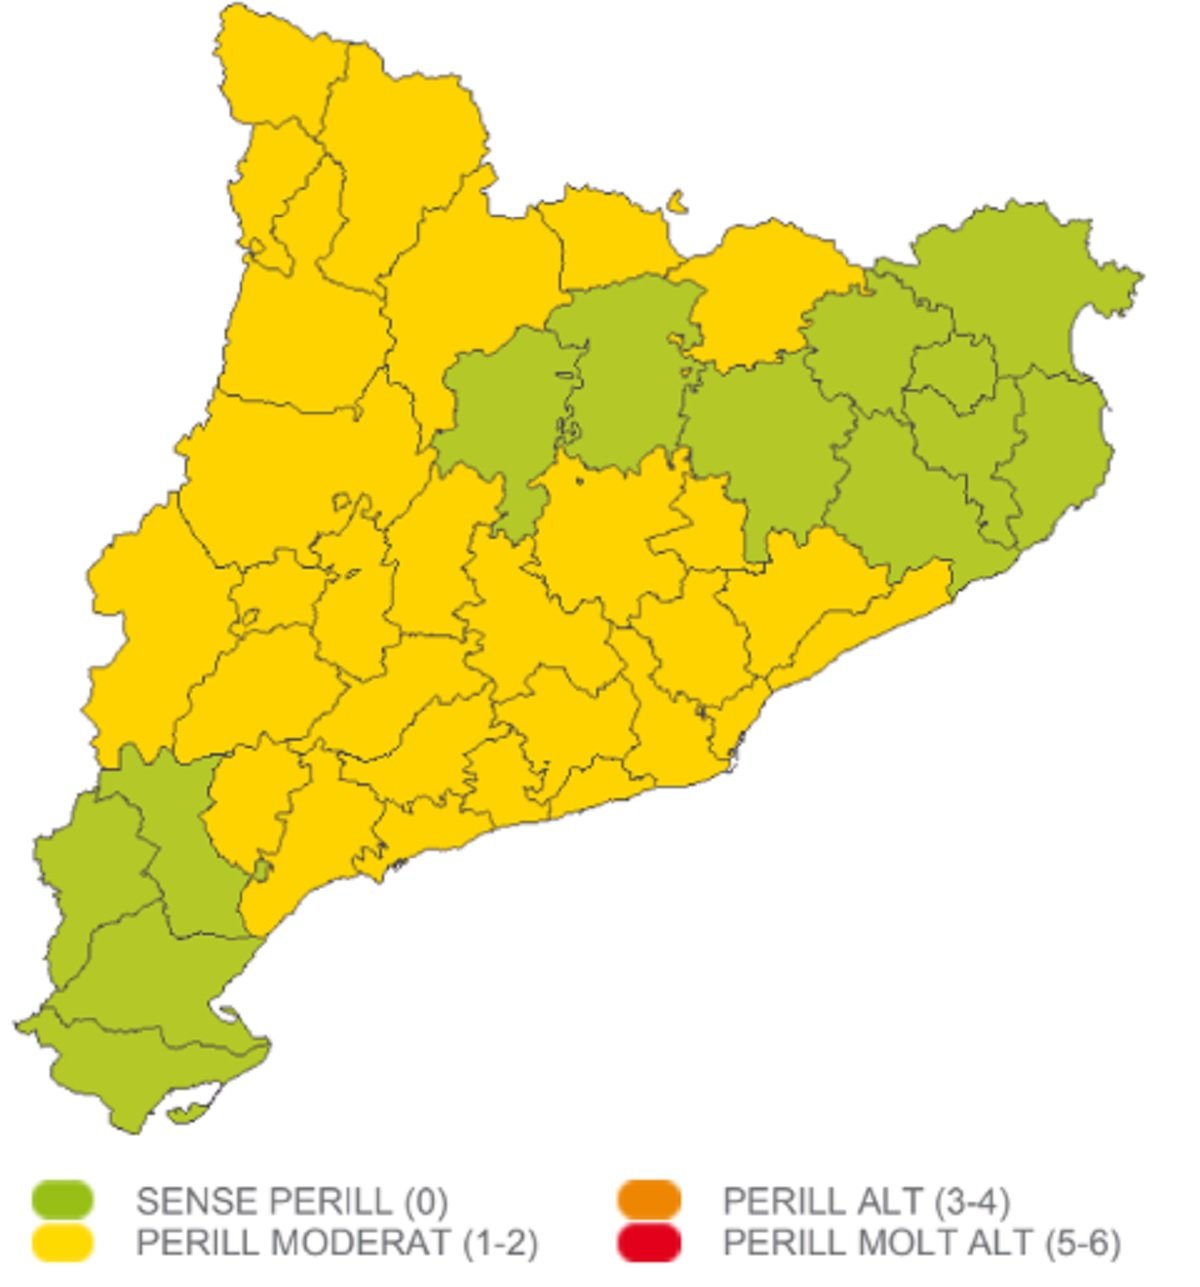 Alerta viento Catalunya el jueves, 13 de abril Meteocat